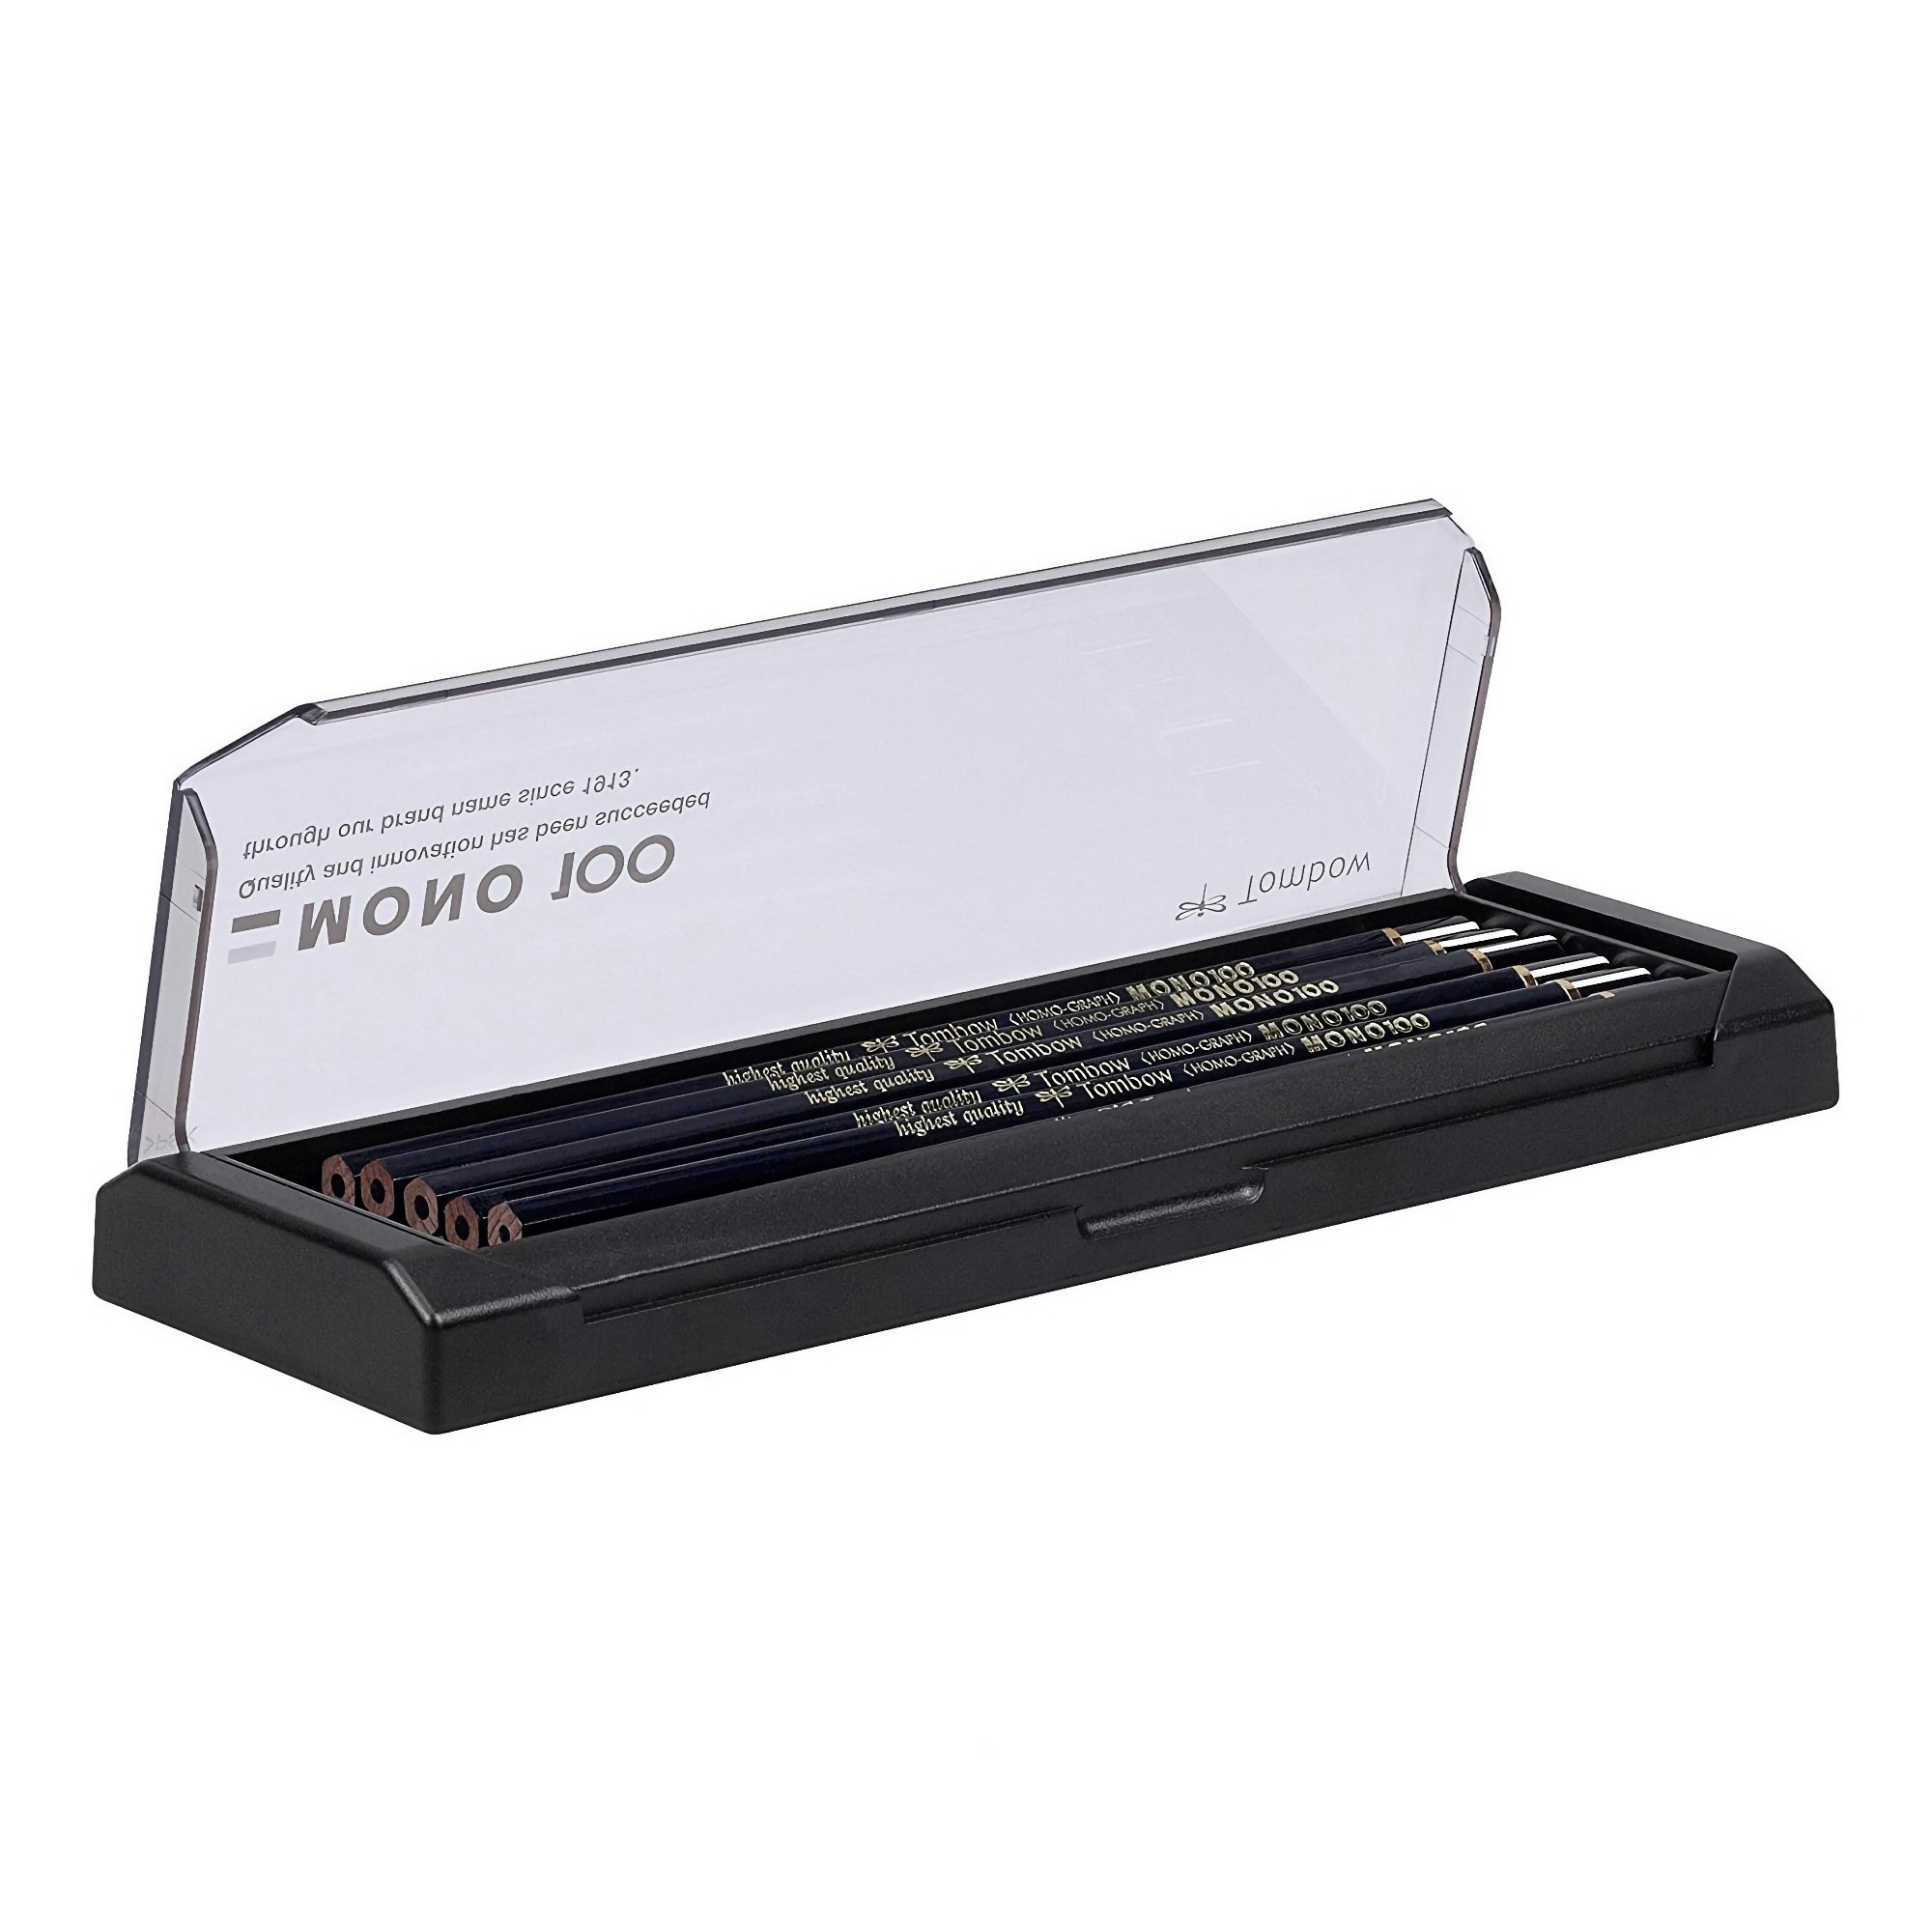 Tombow Mono 100 Pencil – 3B – set of 12